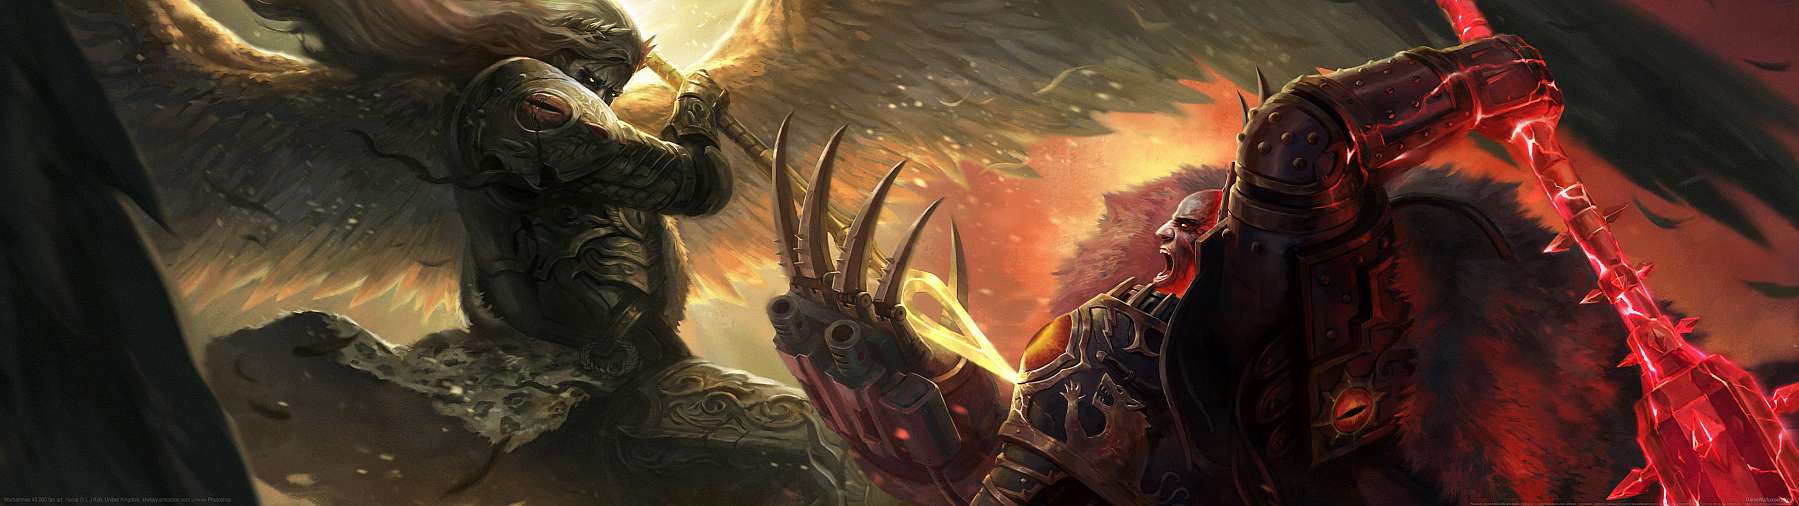 Warhammer 40,000 fan art superwide Hintergrundbild 03